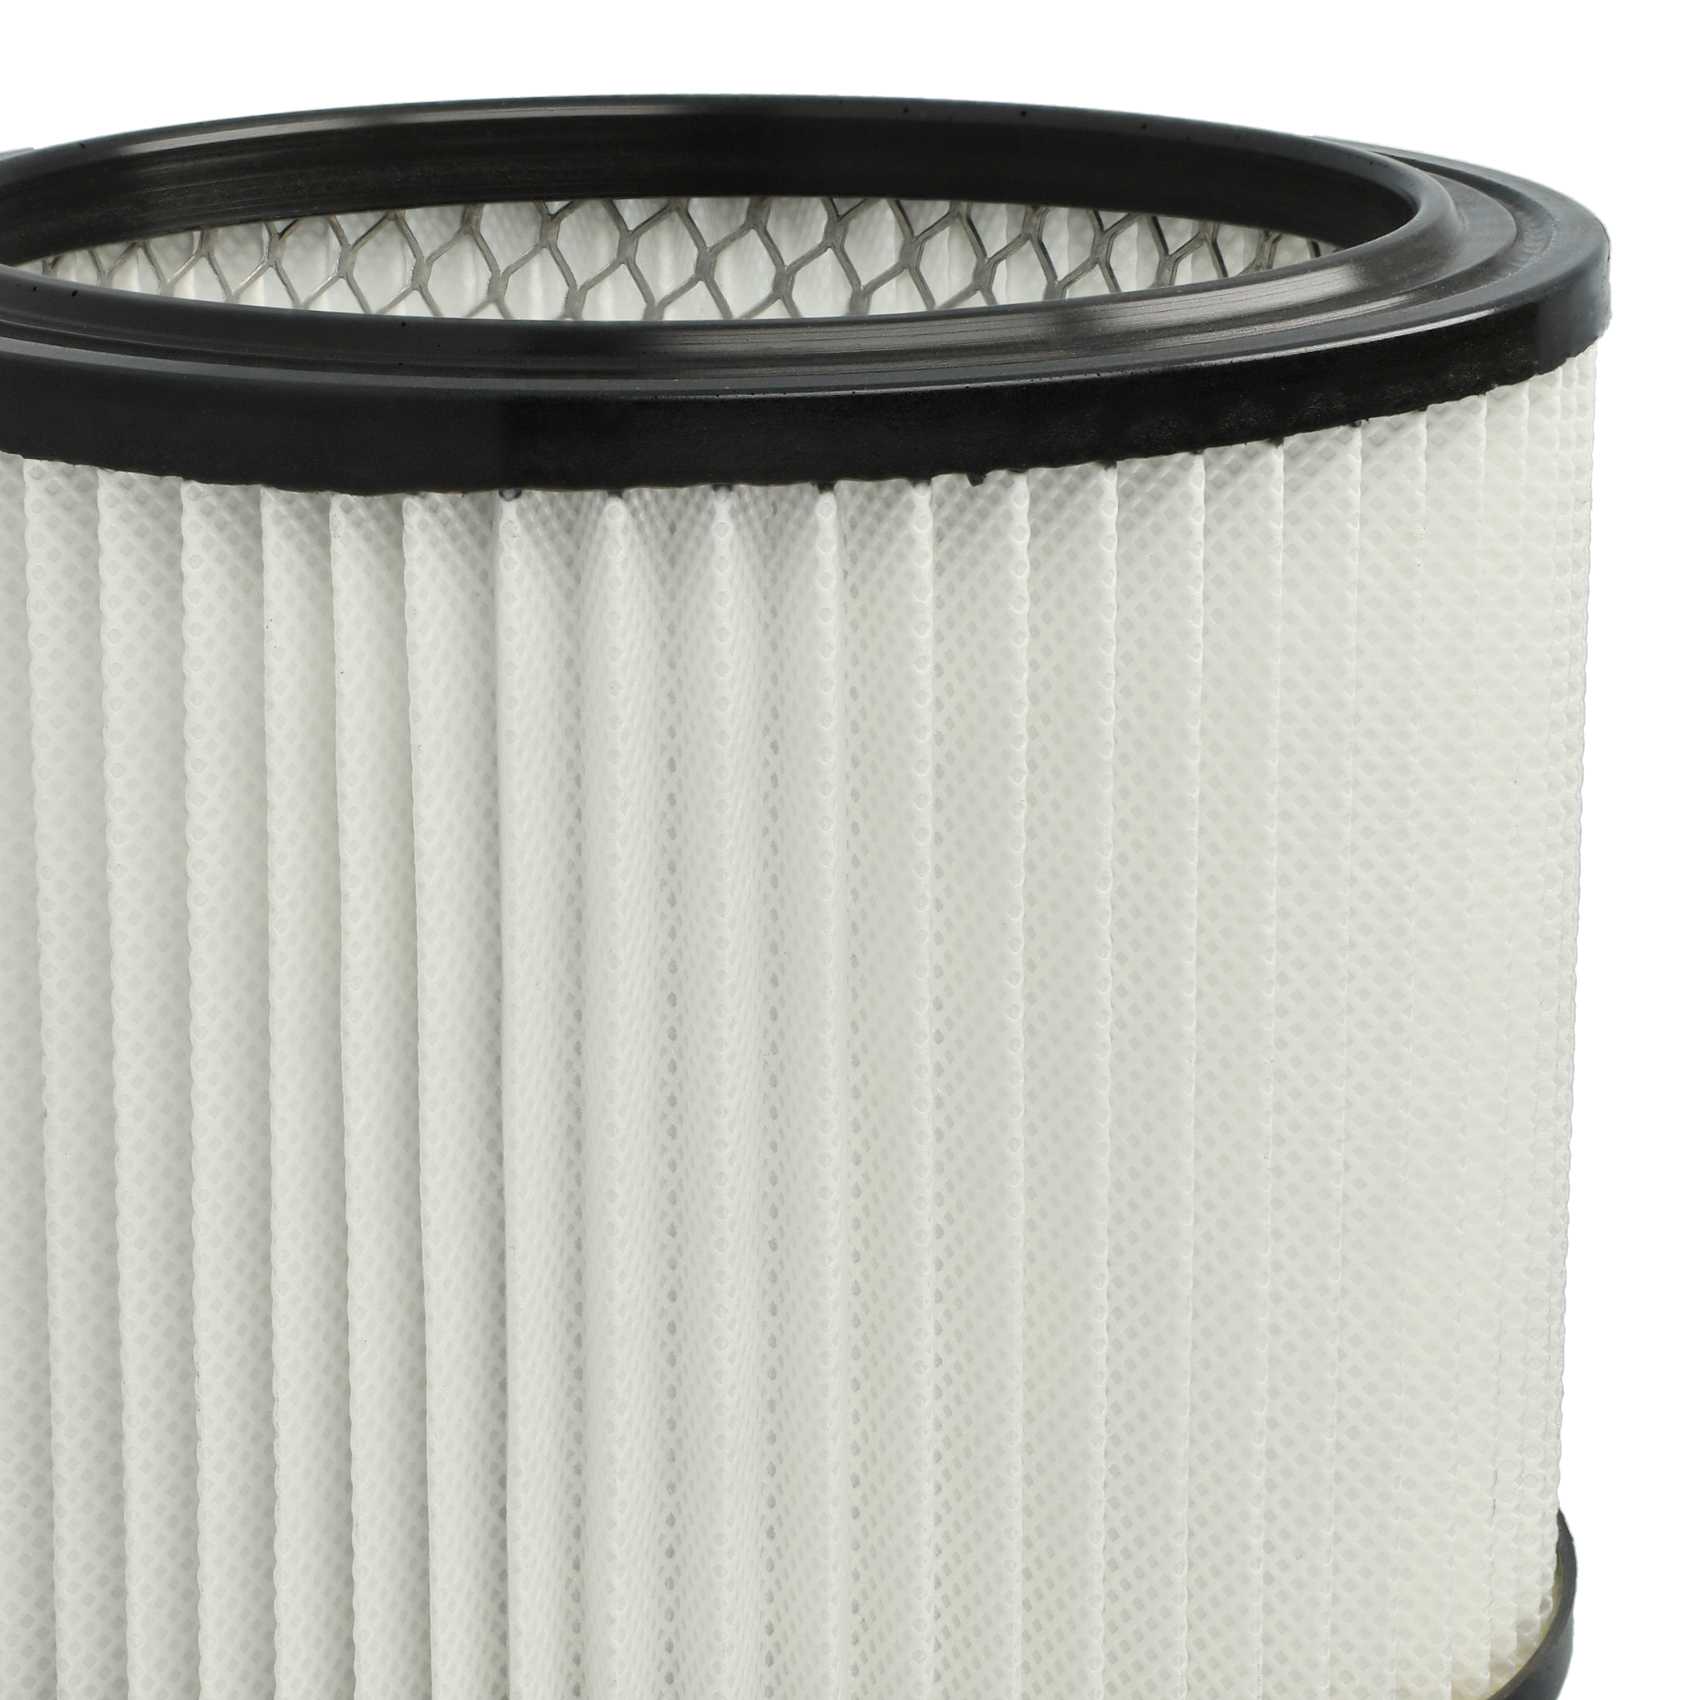 3x Filtres remplace Scheppach 7907702716 pour aspirateur - filtre HEPA